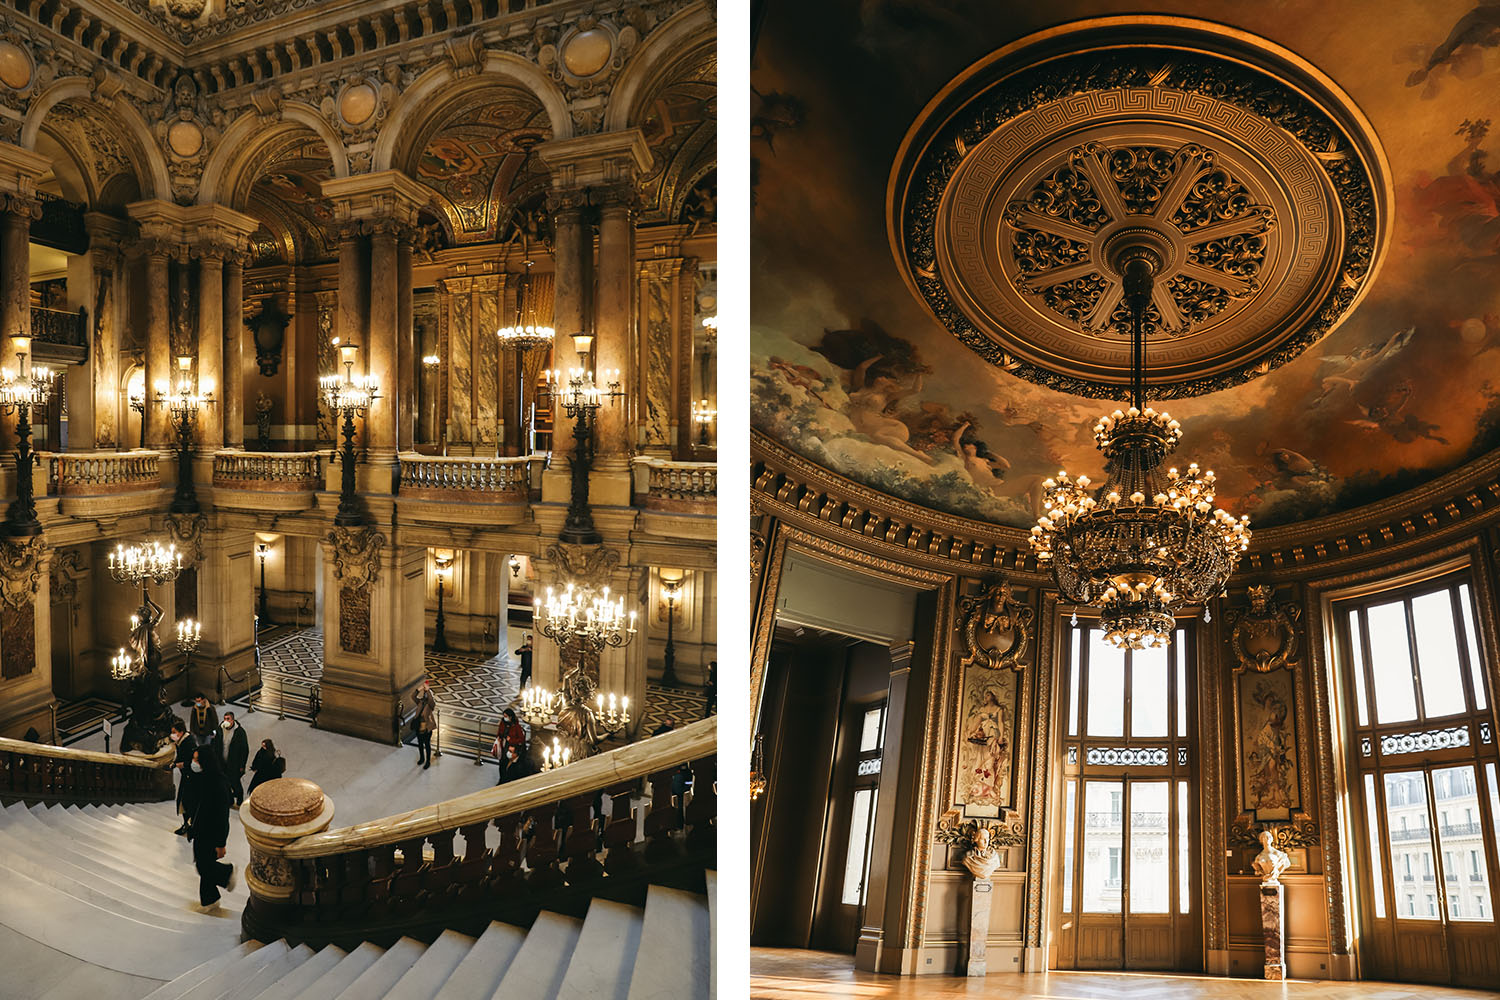 Escaliers Opéra Garnier Paris